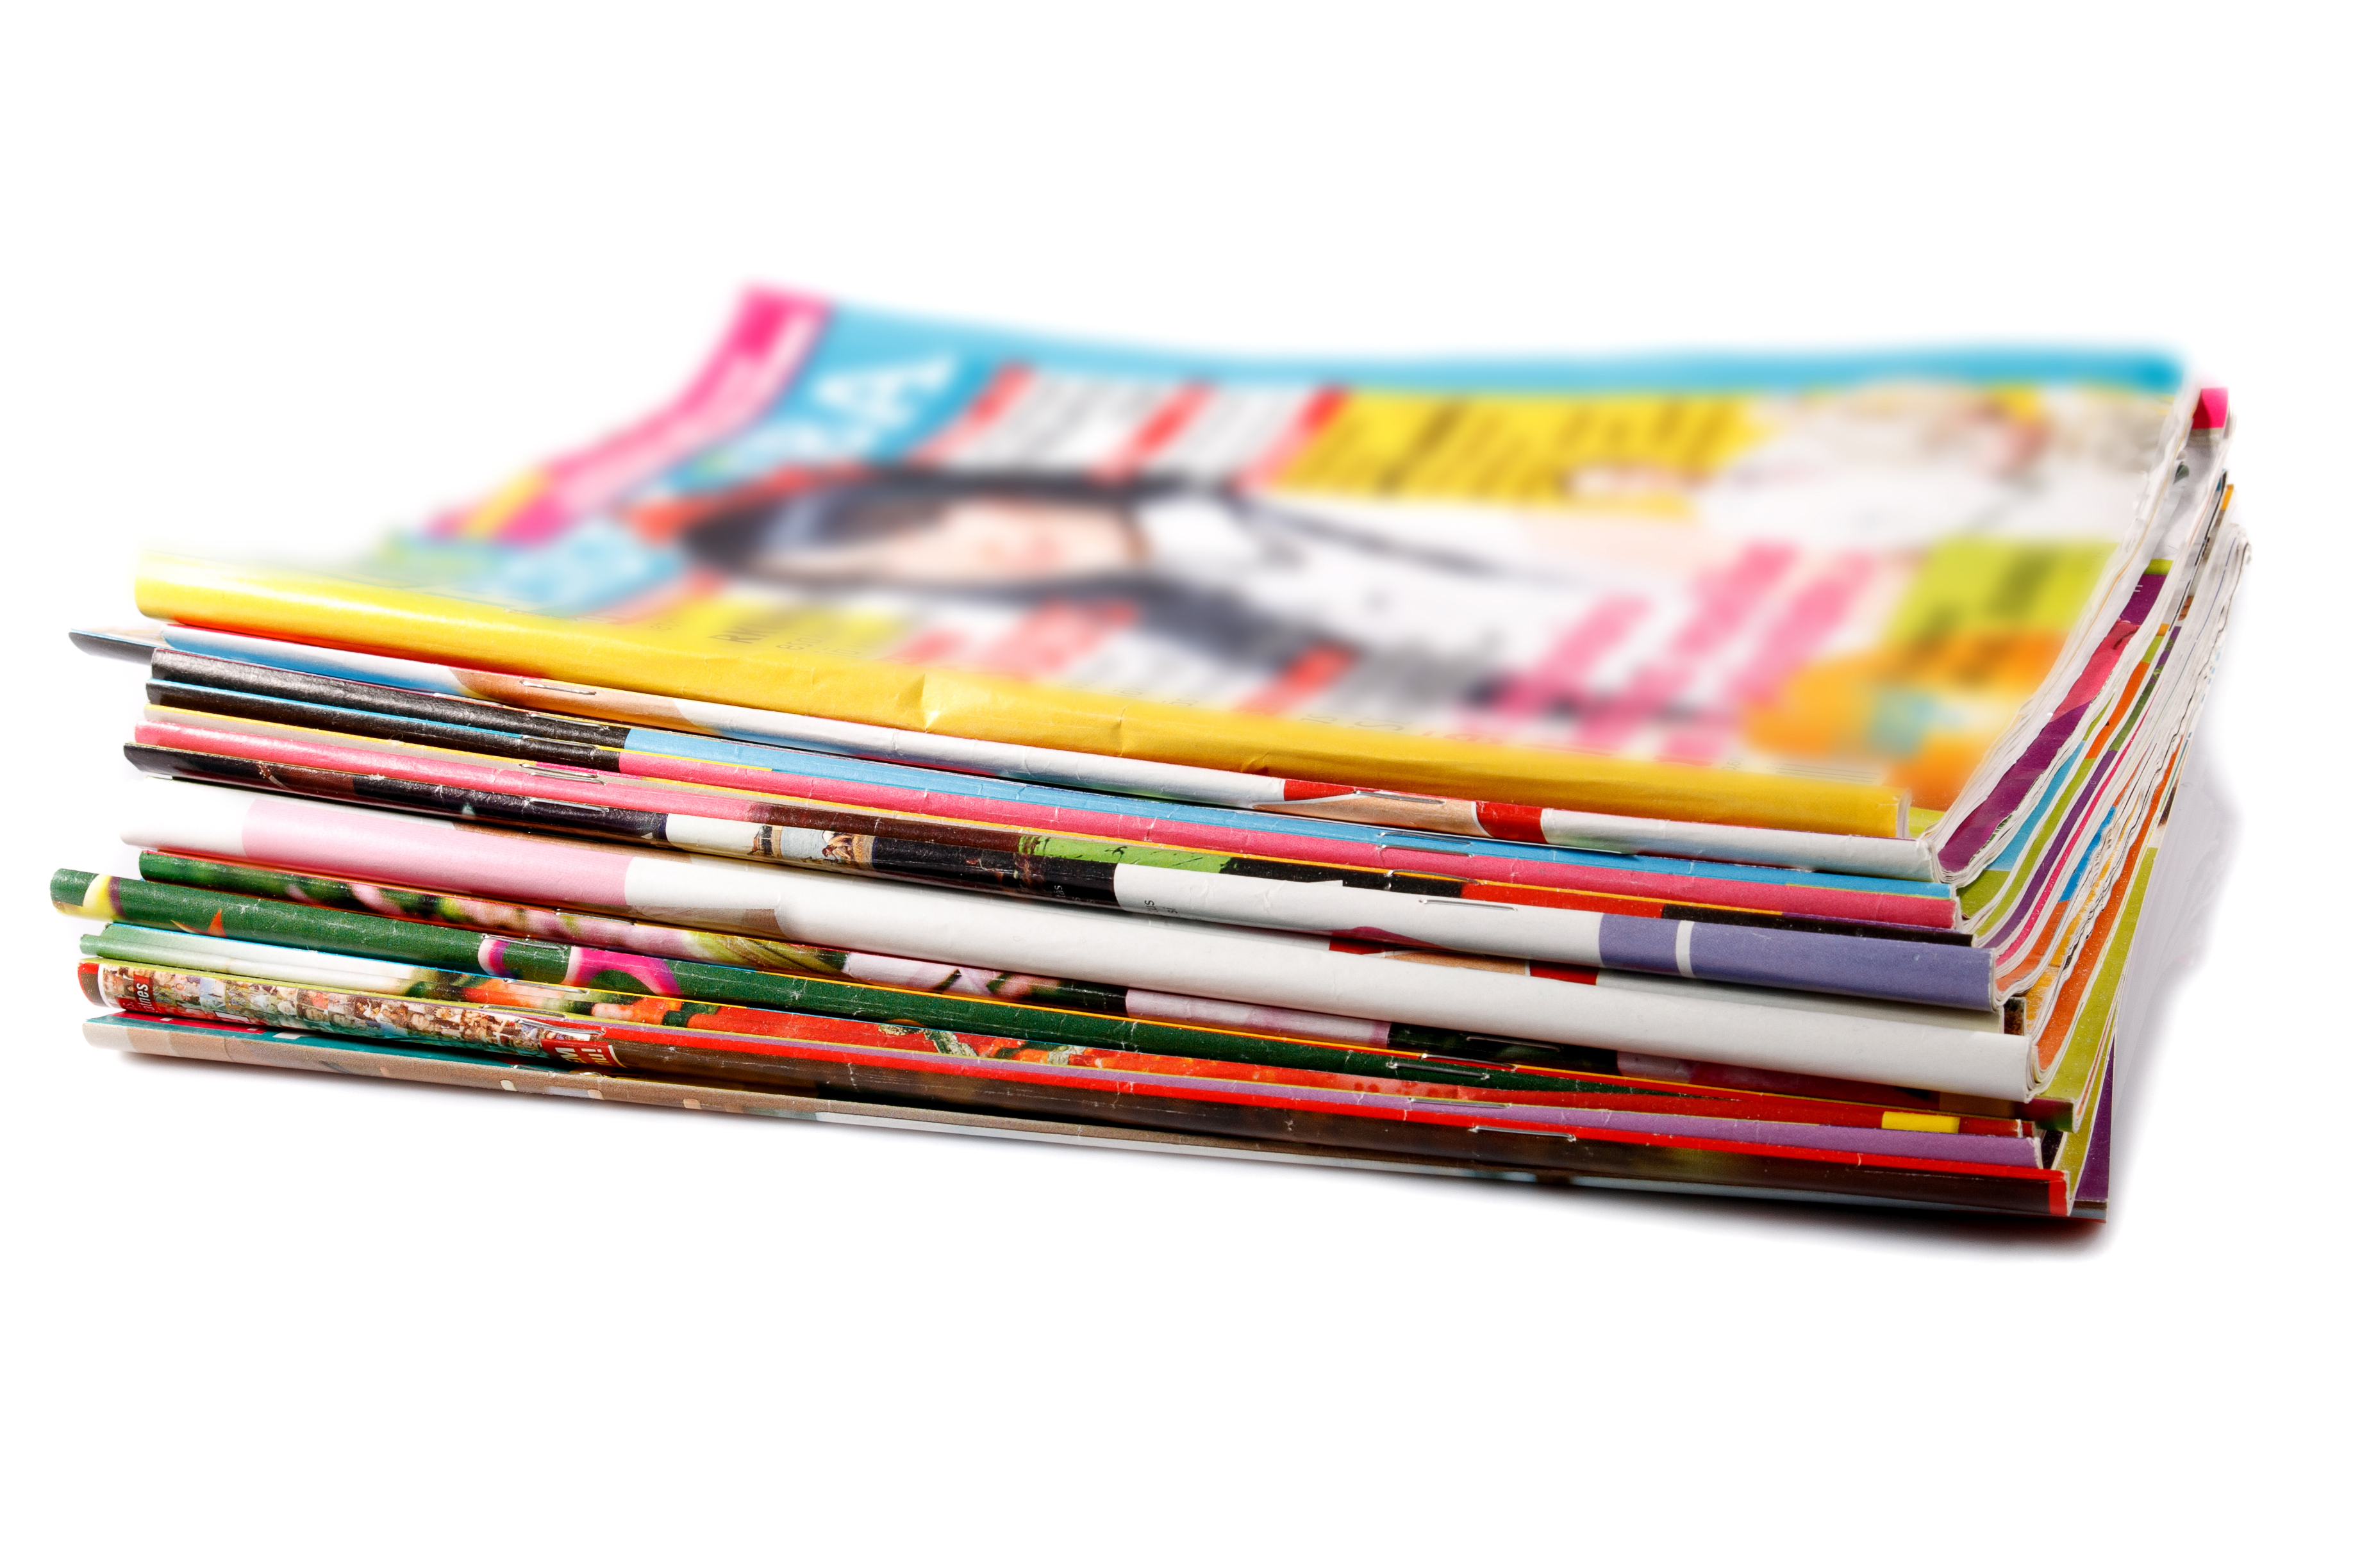 Une pile de magazines usagés | Source : Shutterstock